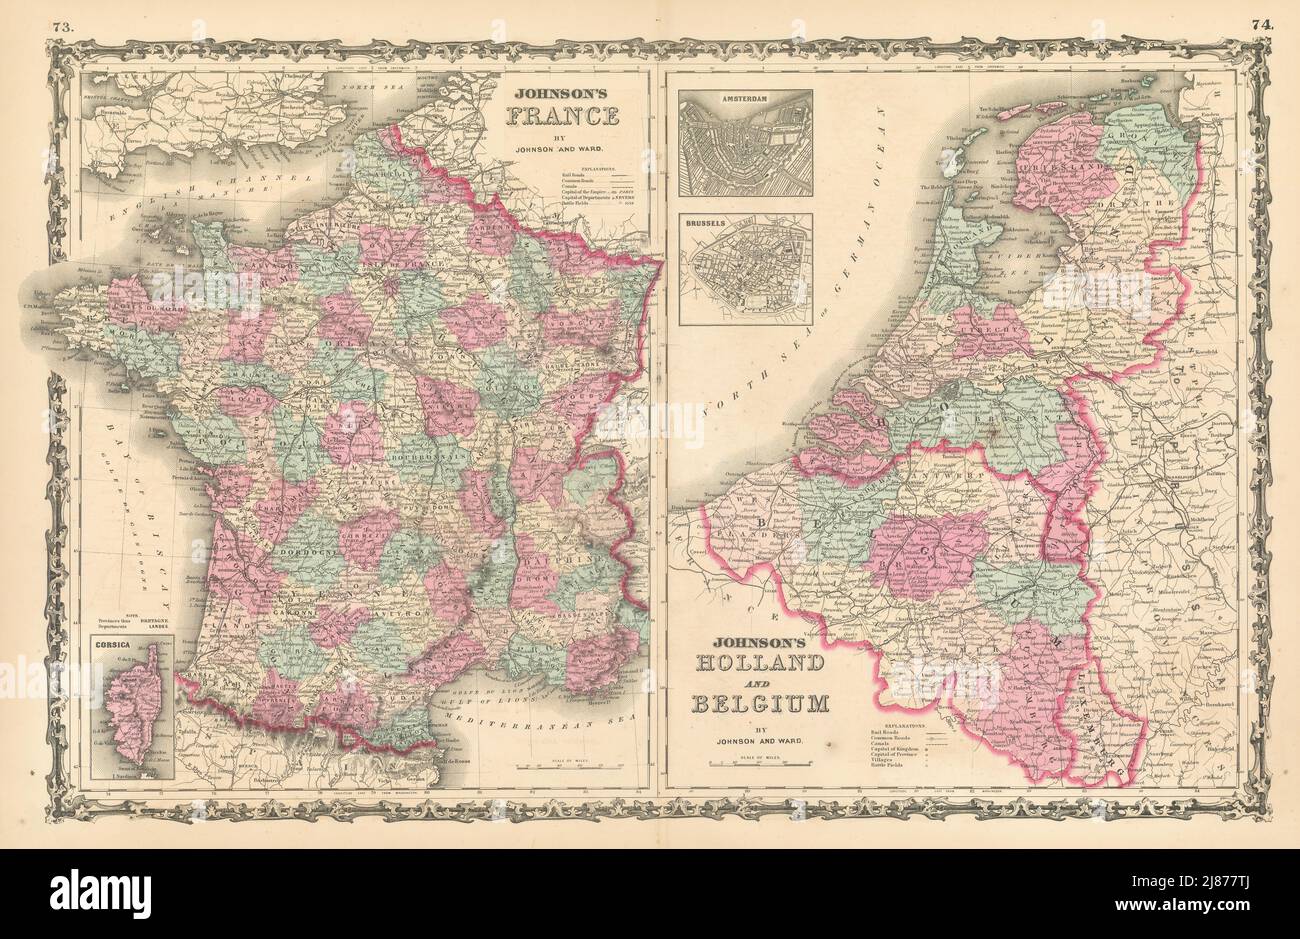 Johnson's France, Holland & Belgium. 2 mappe su un foglio 1862 antiche Foto Stock